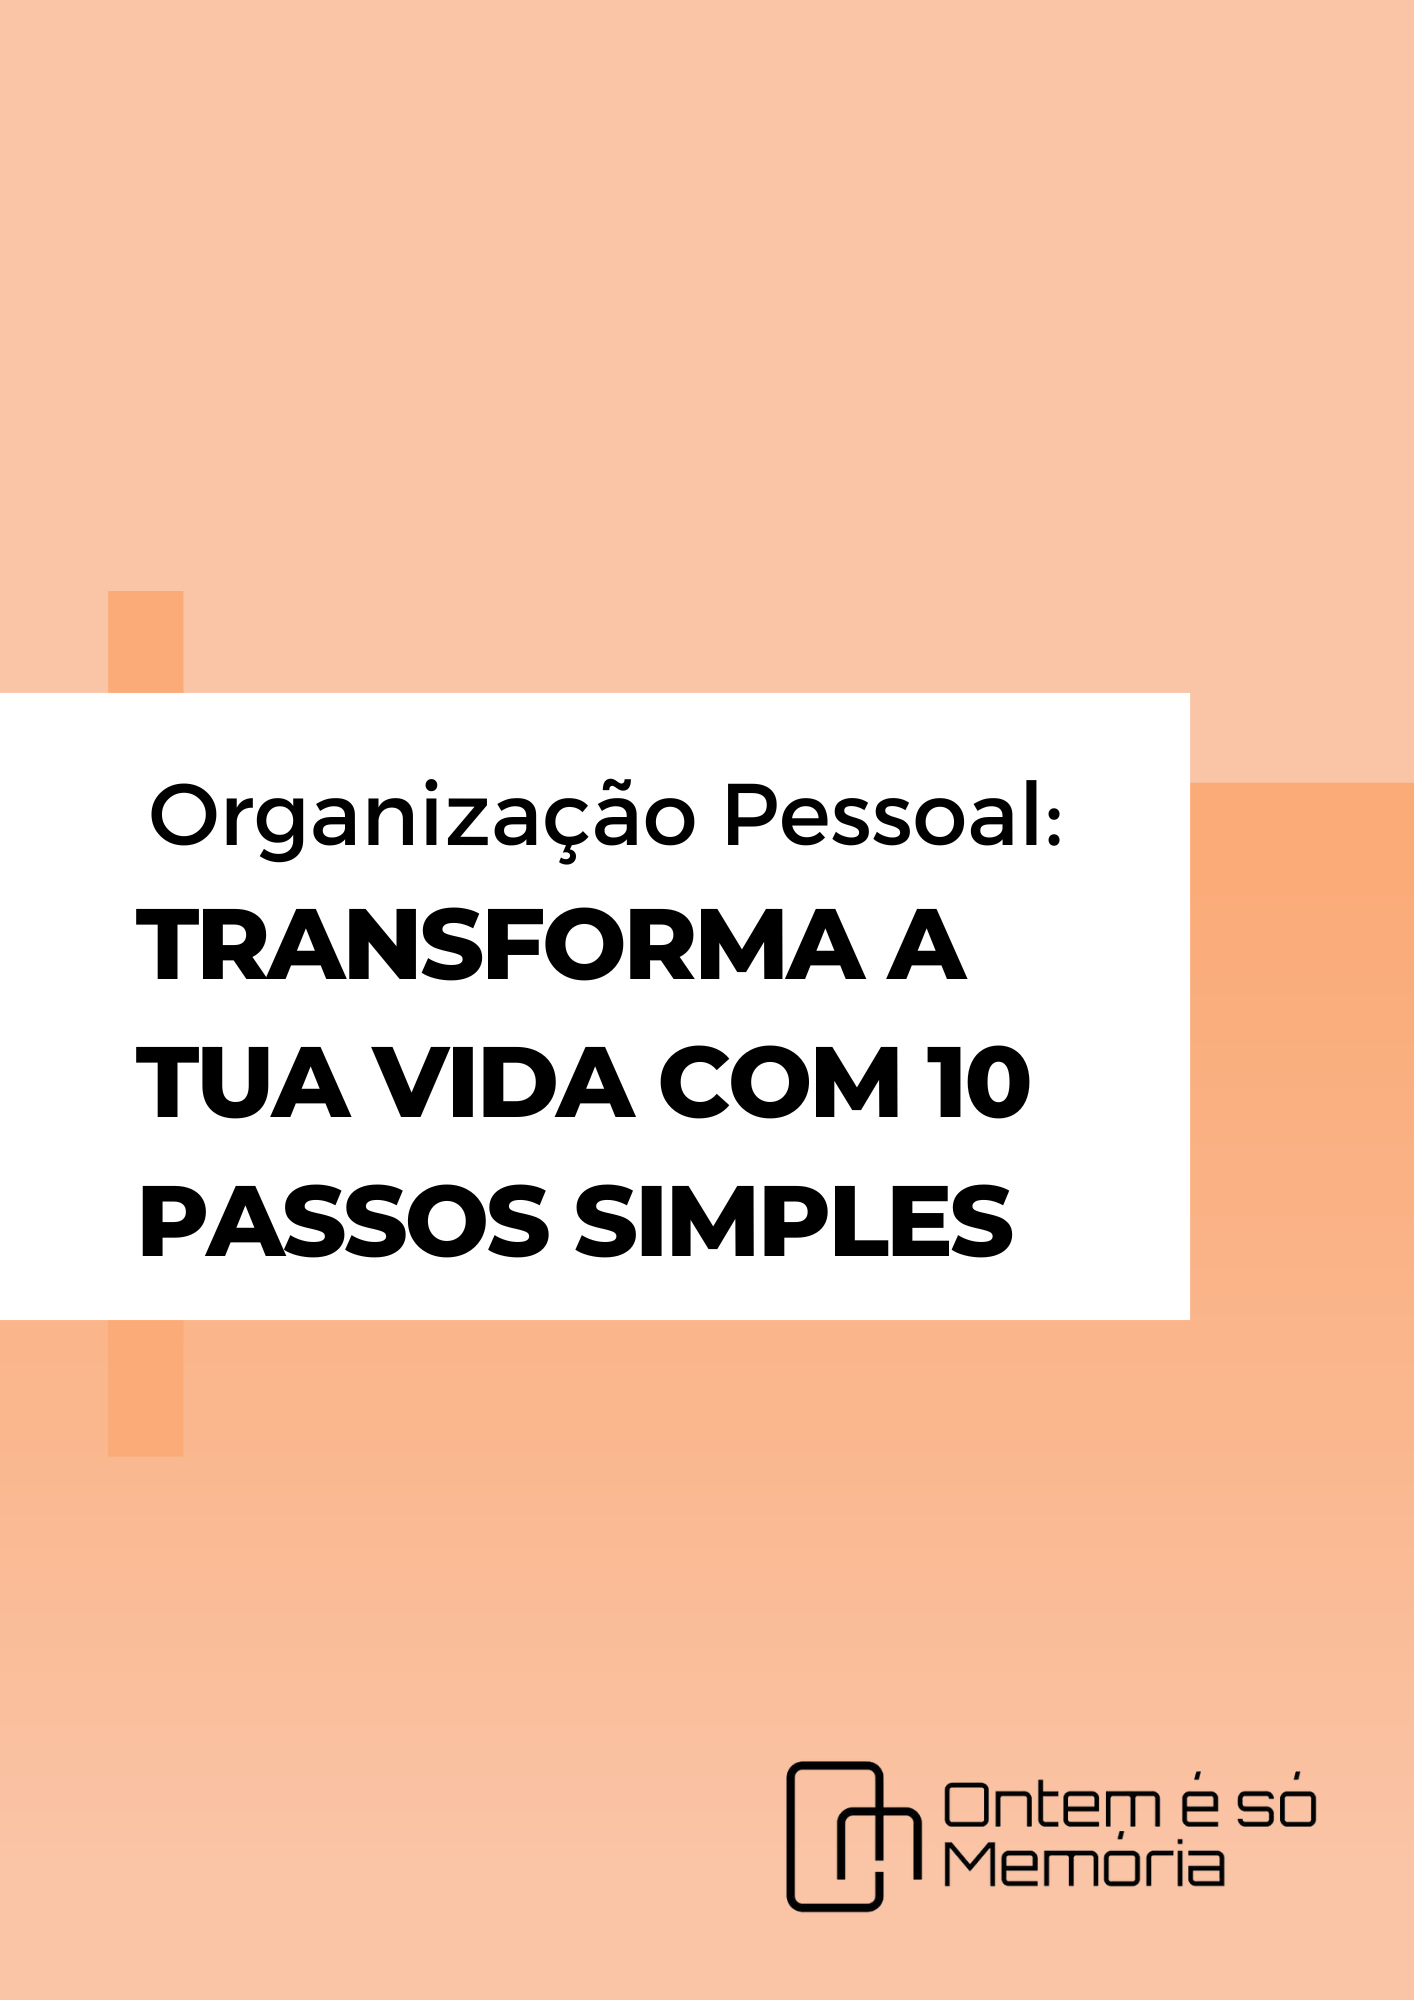 Ebook "Organização Pessoal: Transforma a Tua Vida com 10 passos simples"